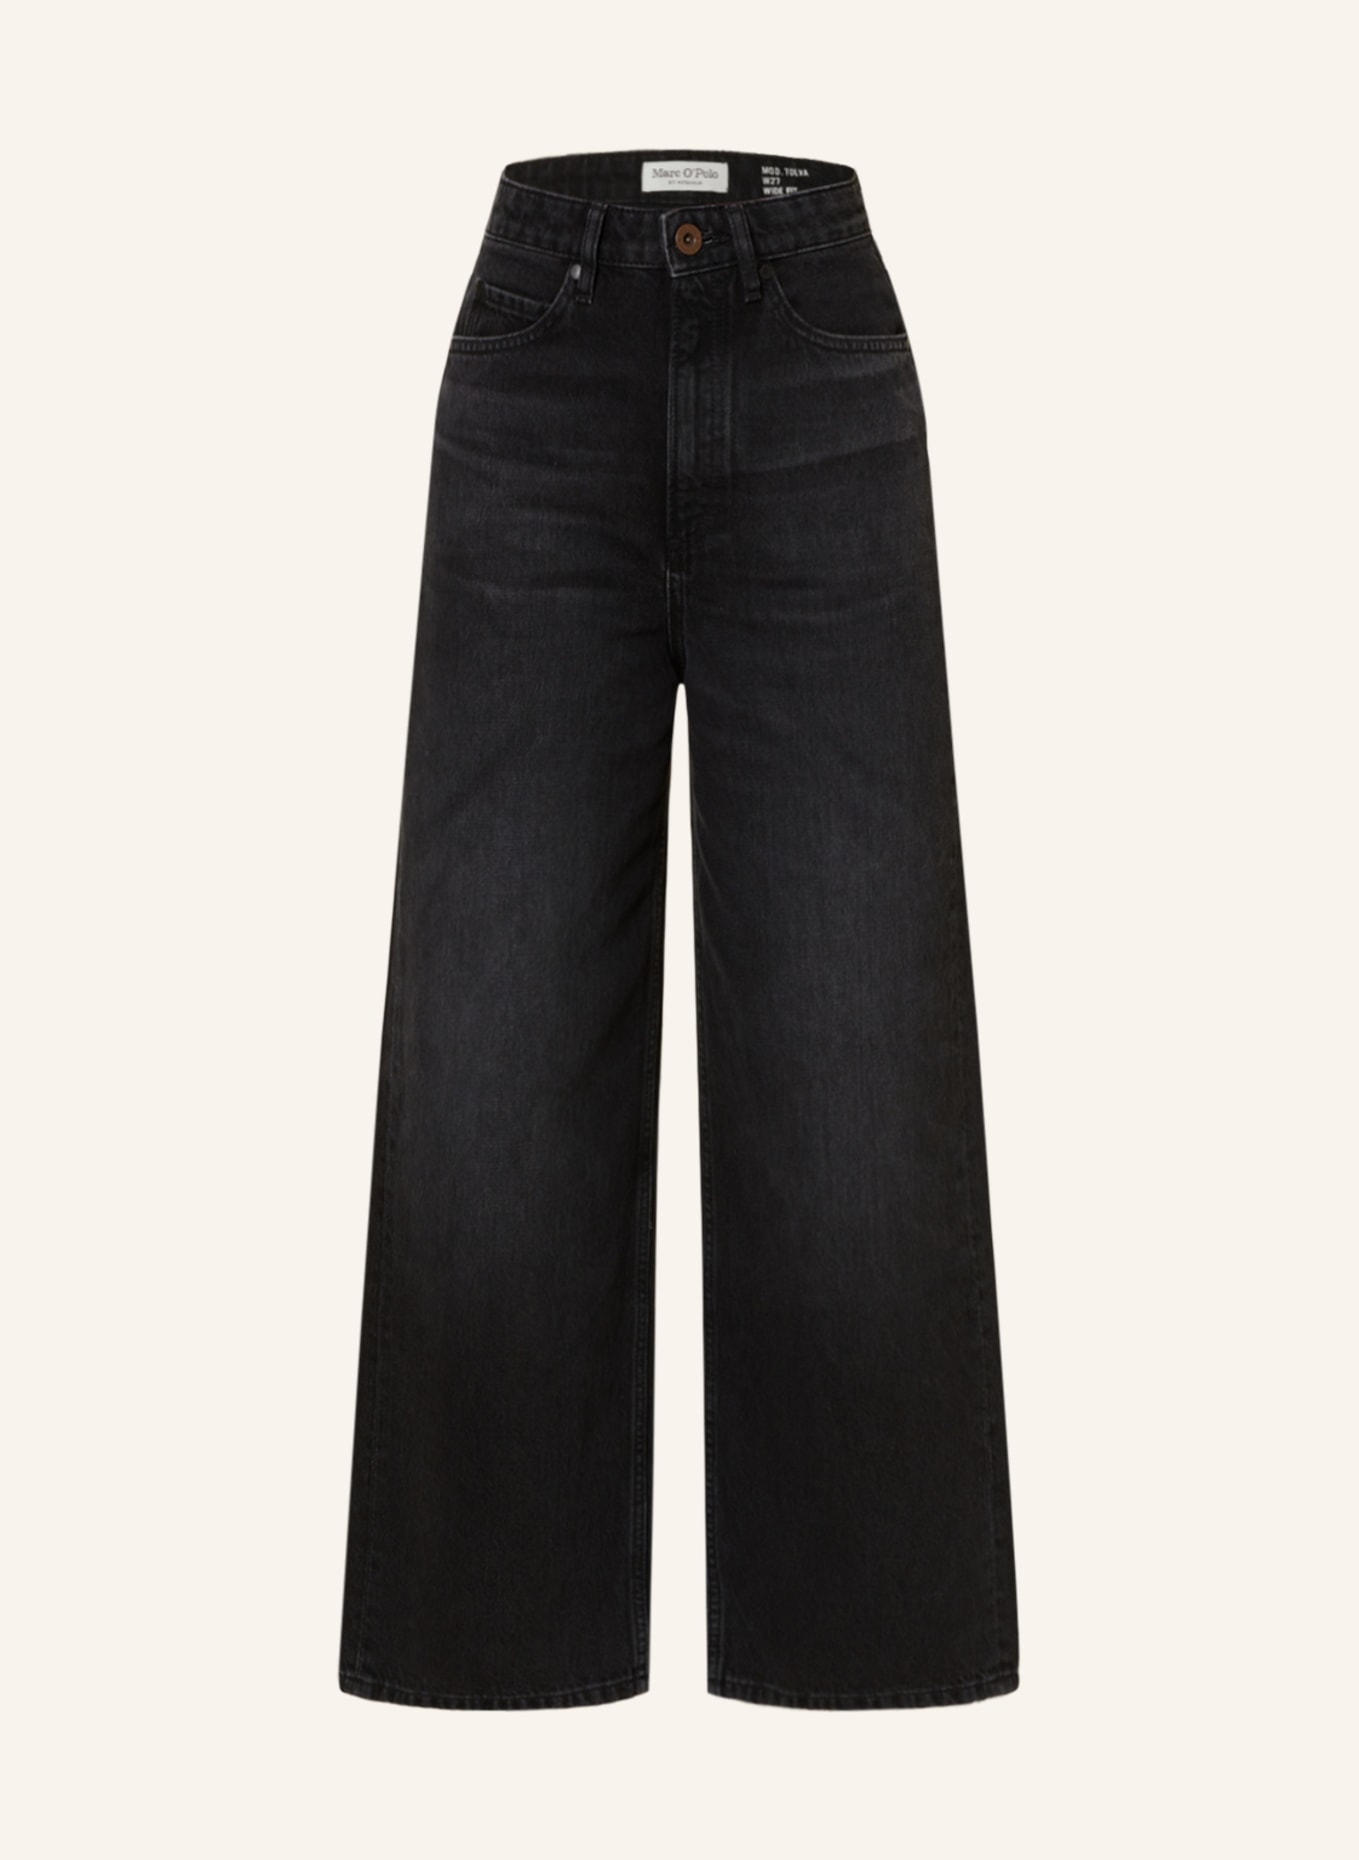 Marc O'Polo 7/8-Jeans, Farbe: 073 Authentic black denim wash (Bild 1)